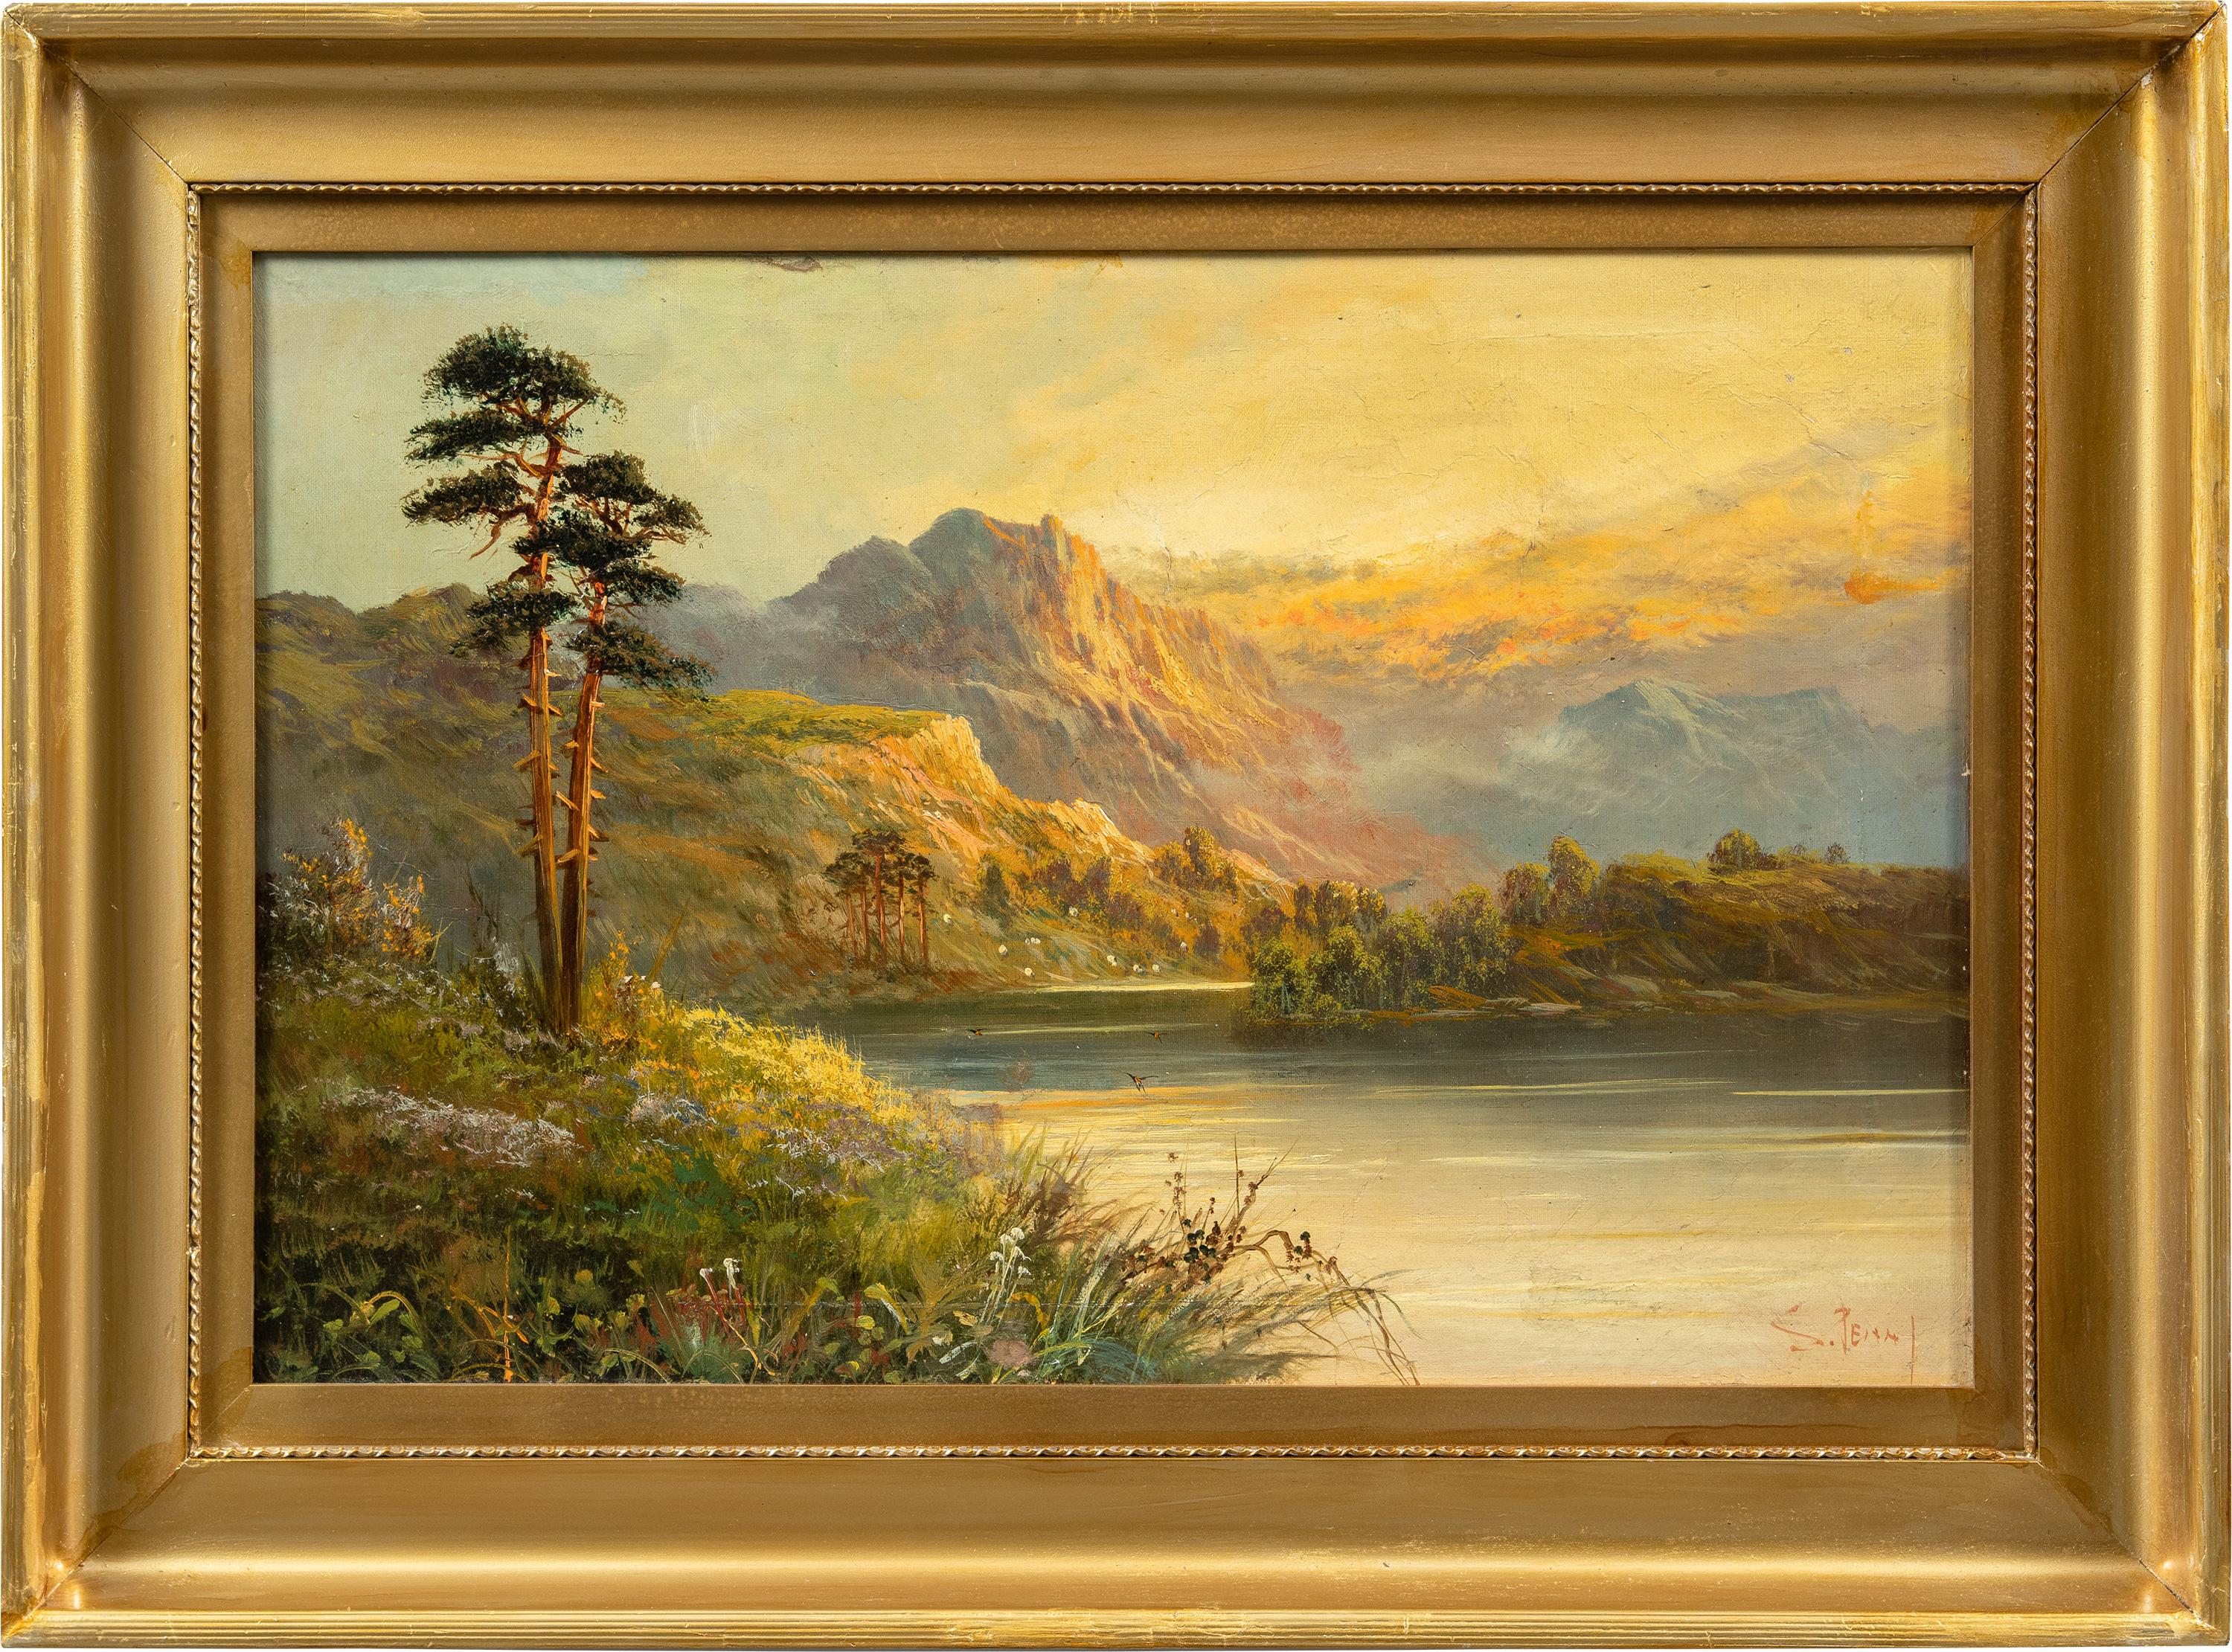 Unknown Figurative Painting – Kontinentale Landschaftsmaler - Malerei des späten 19. Jahrhunderts - Blick auf einen Gebirgsfluss